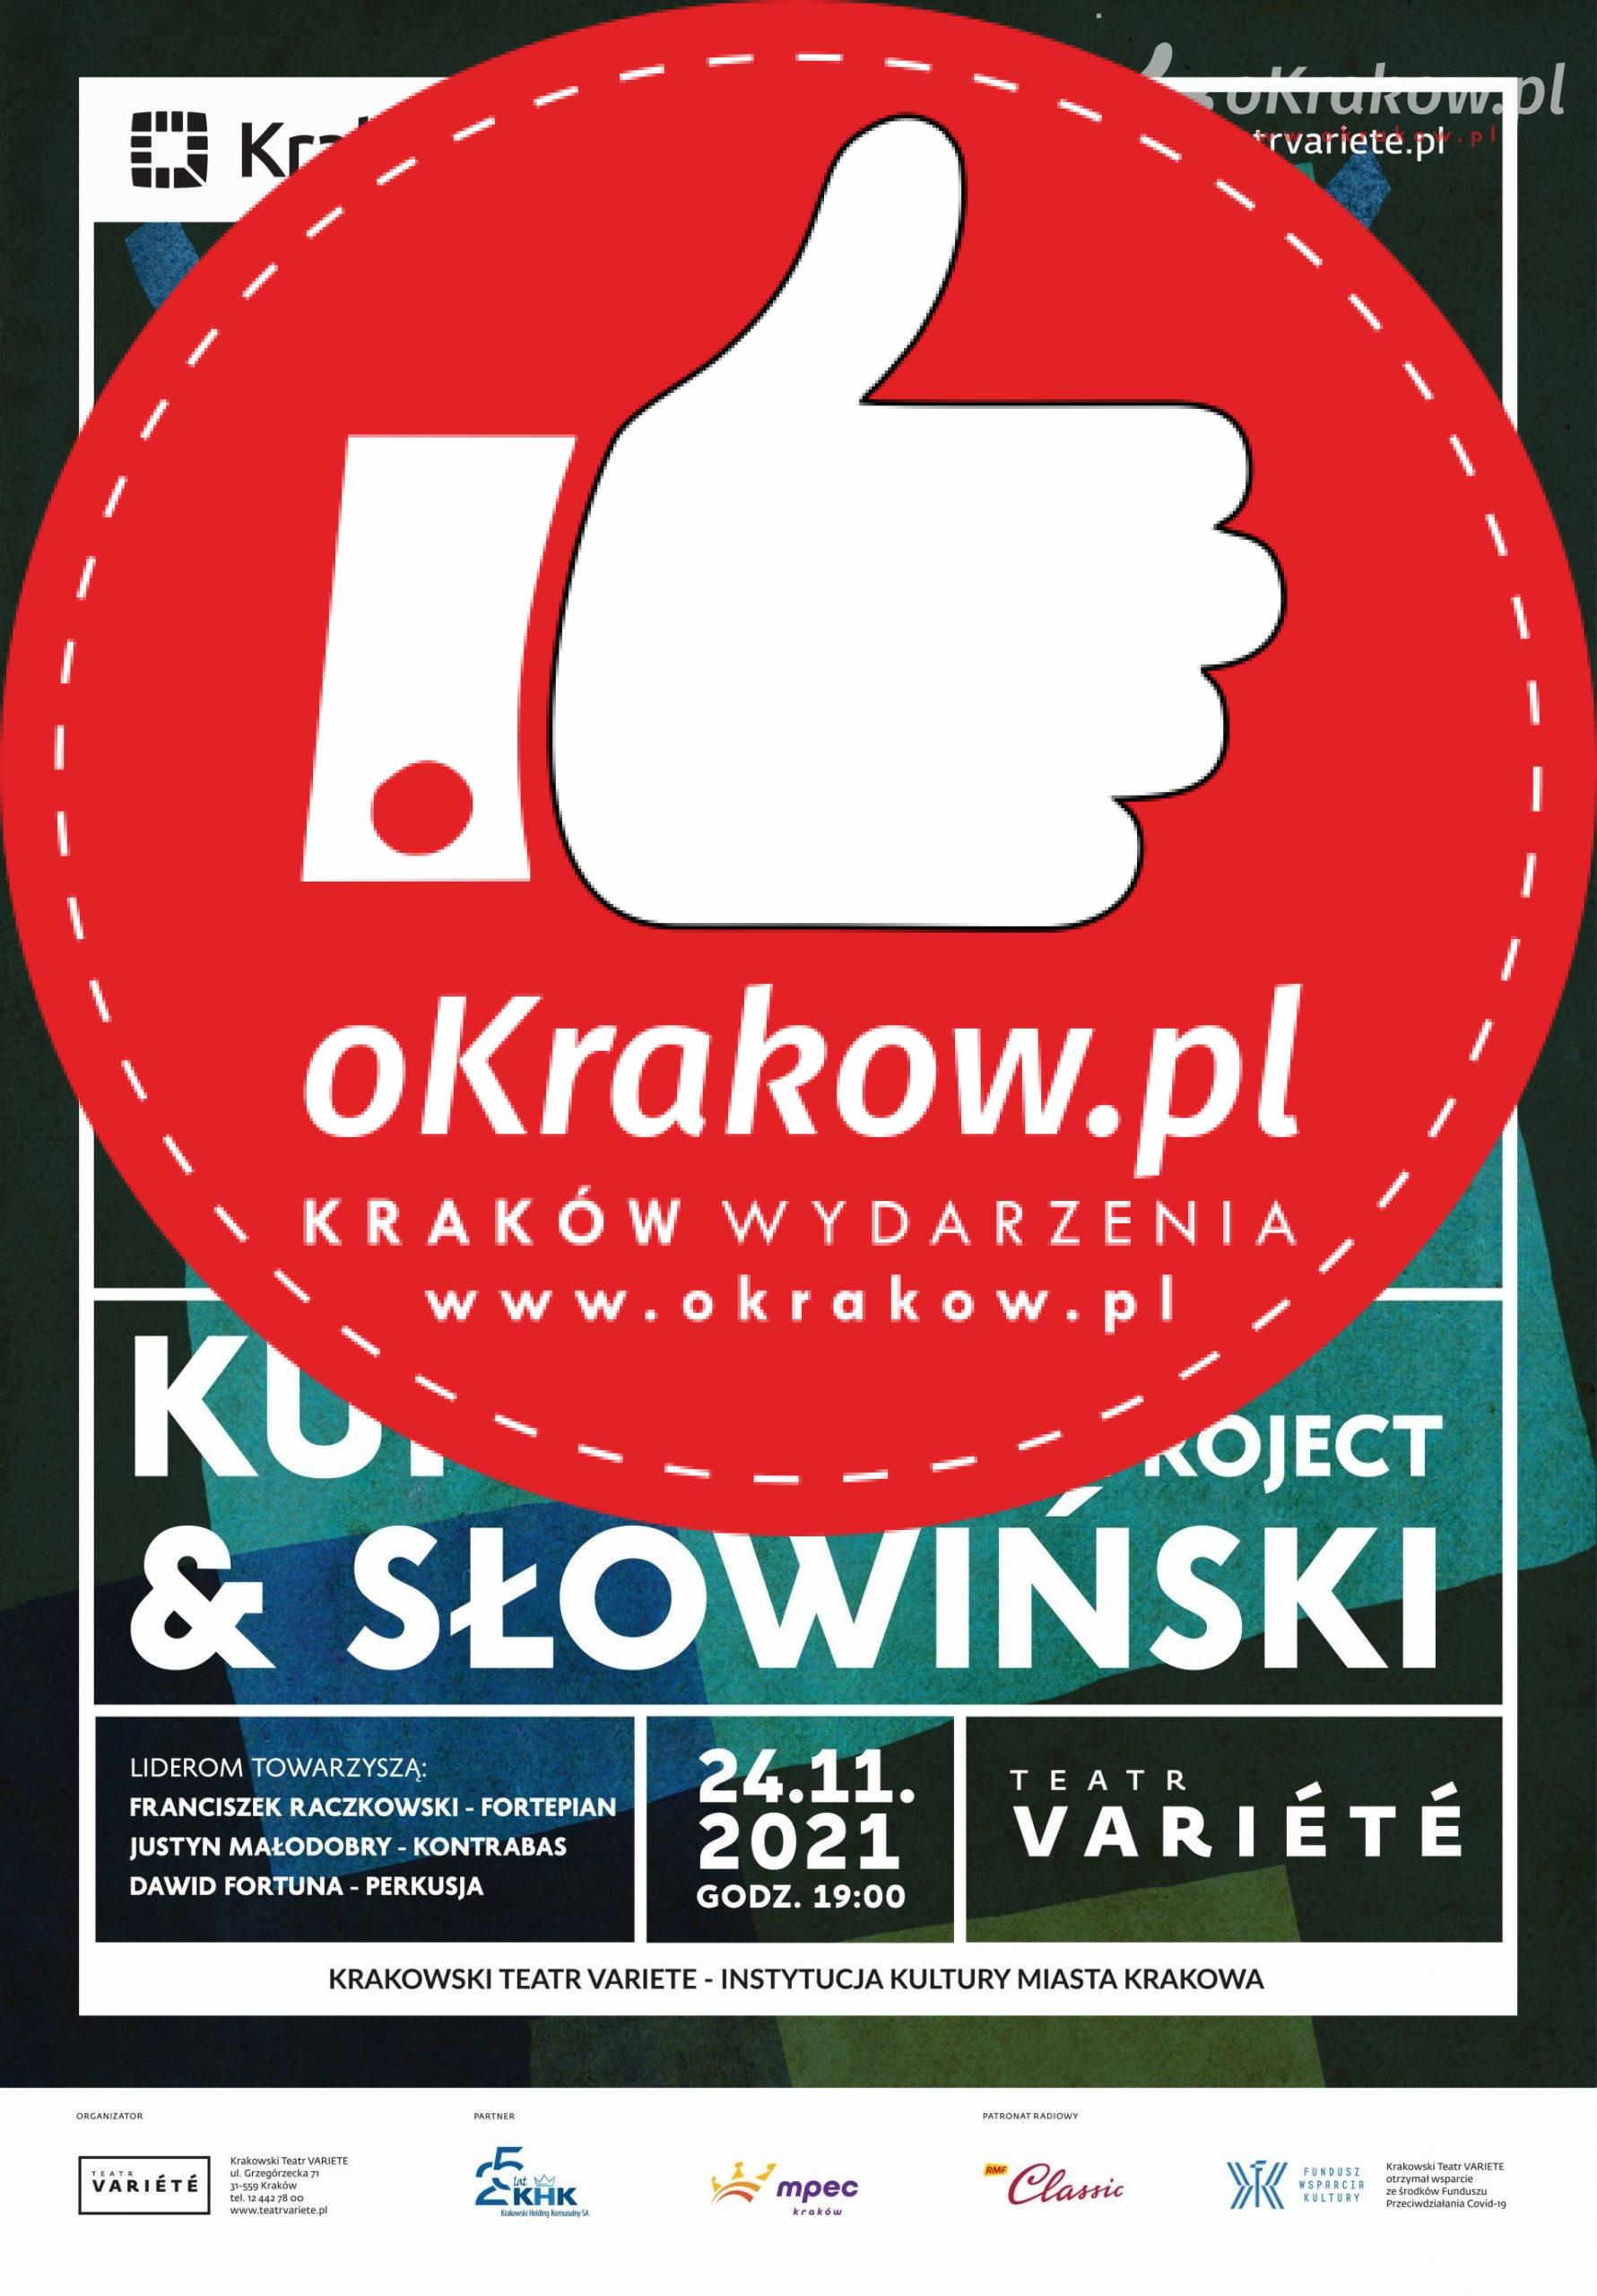 kukurba slowinski jpg scaled - KUKURBA & SŁOWIŃSKI PROJECT w Krakowskim Teatrze VARIETE!